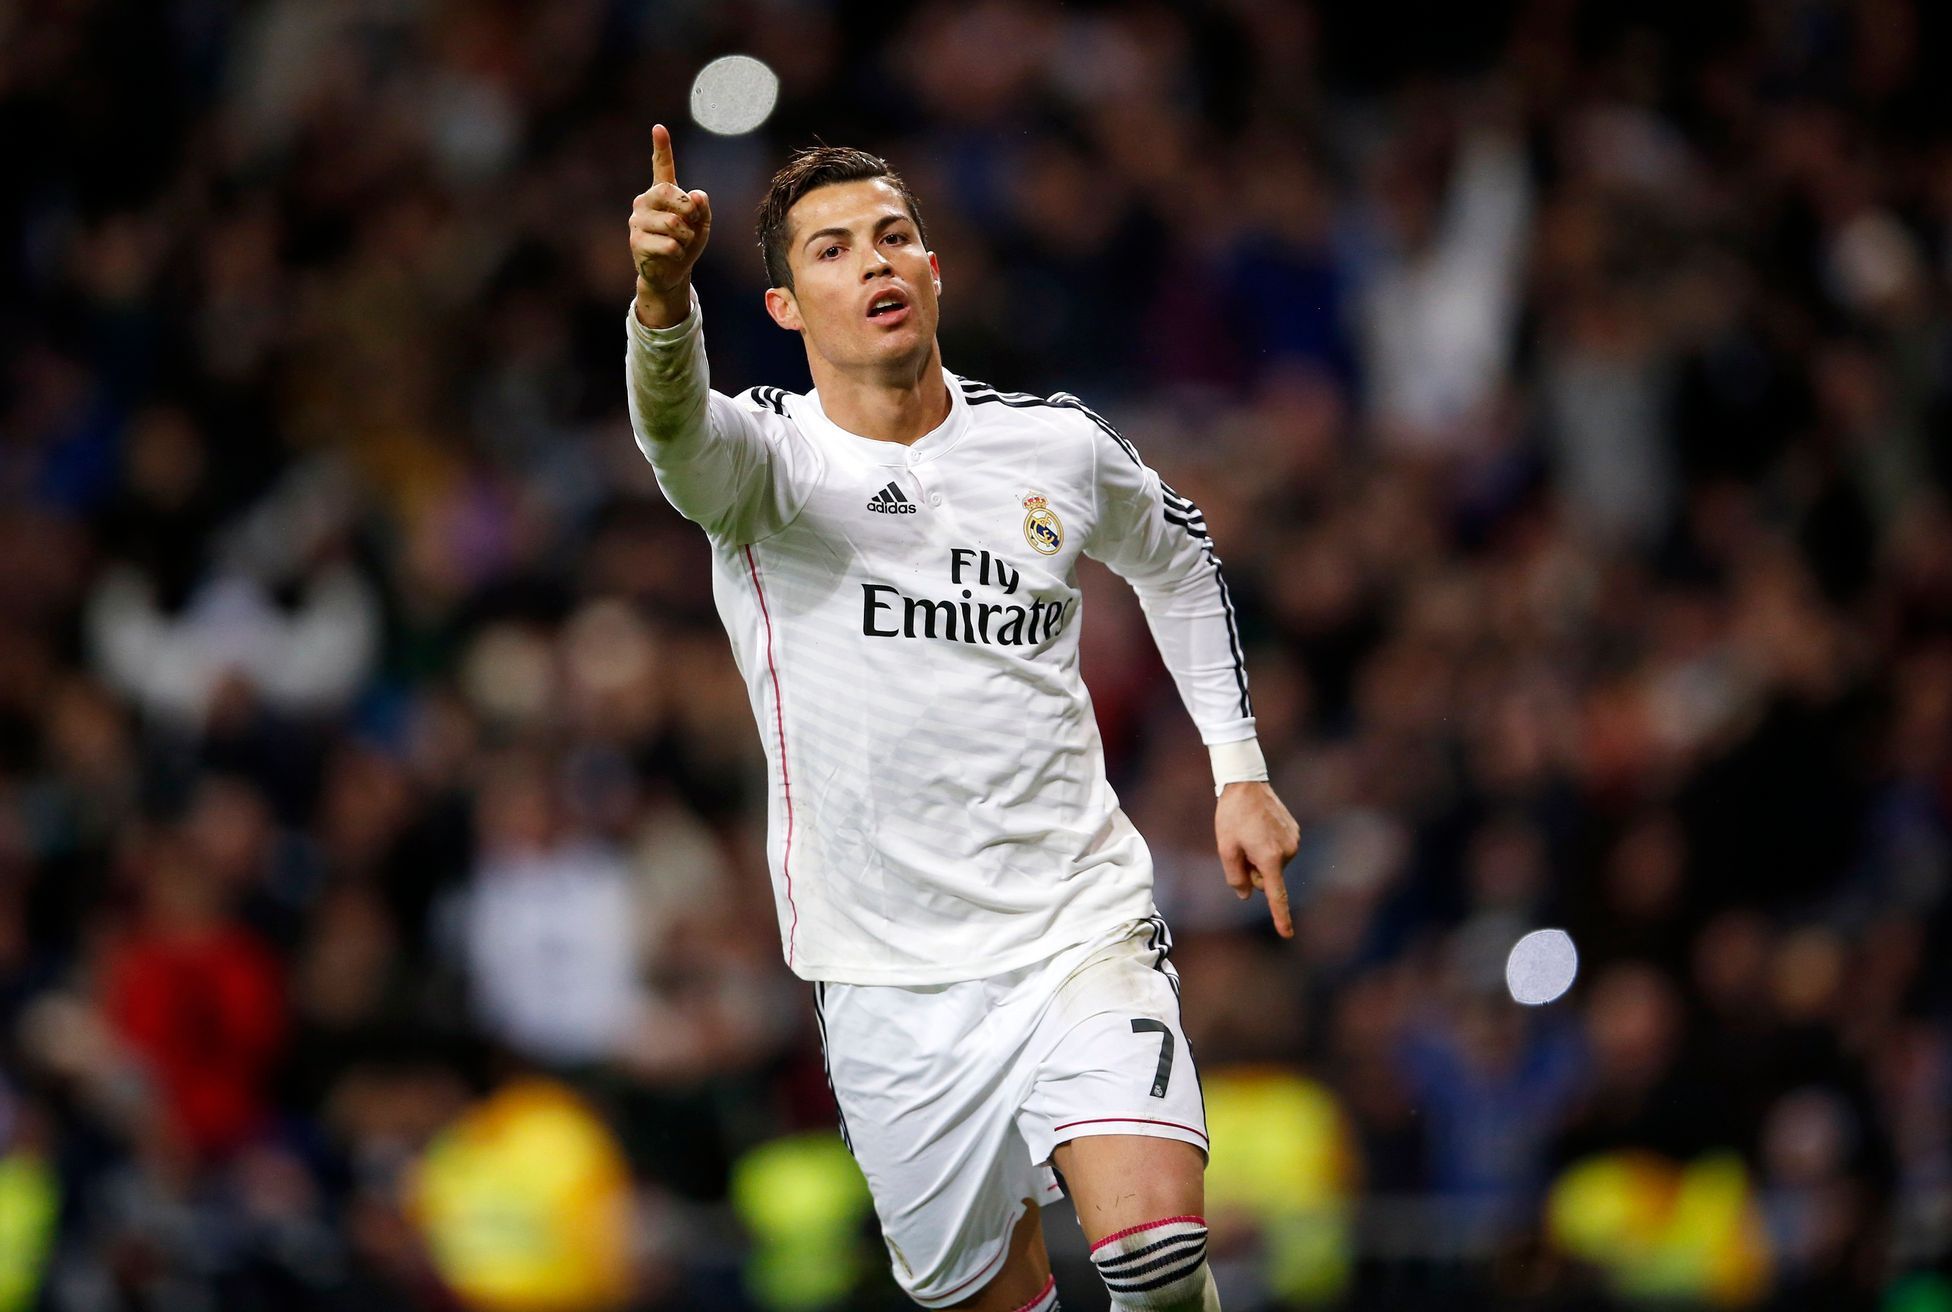 Real Madrid - Celta Vigo: Cristiano Ronaldo slaví gól